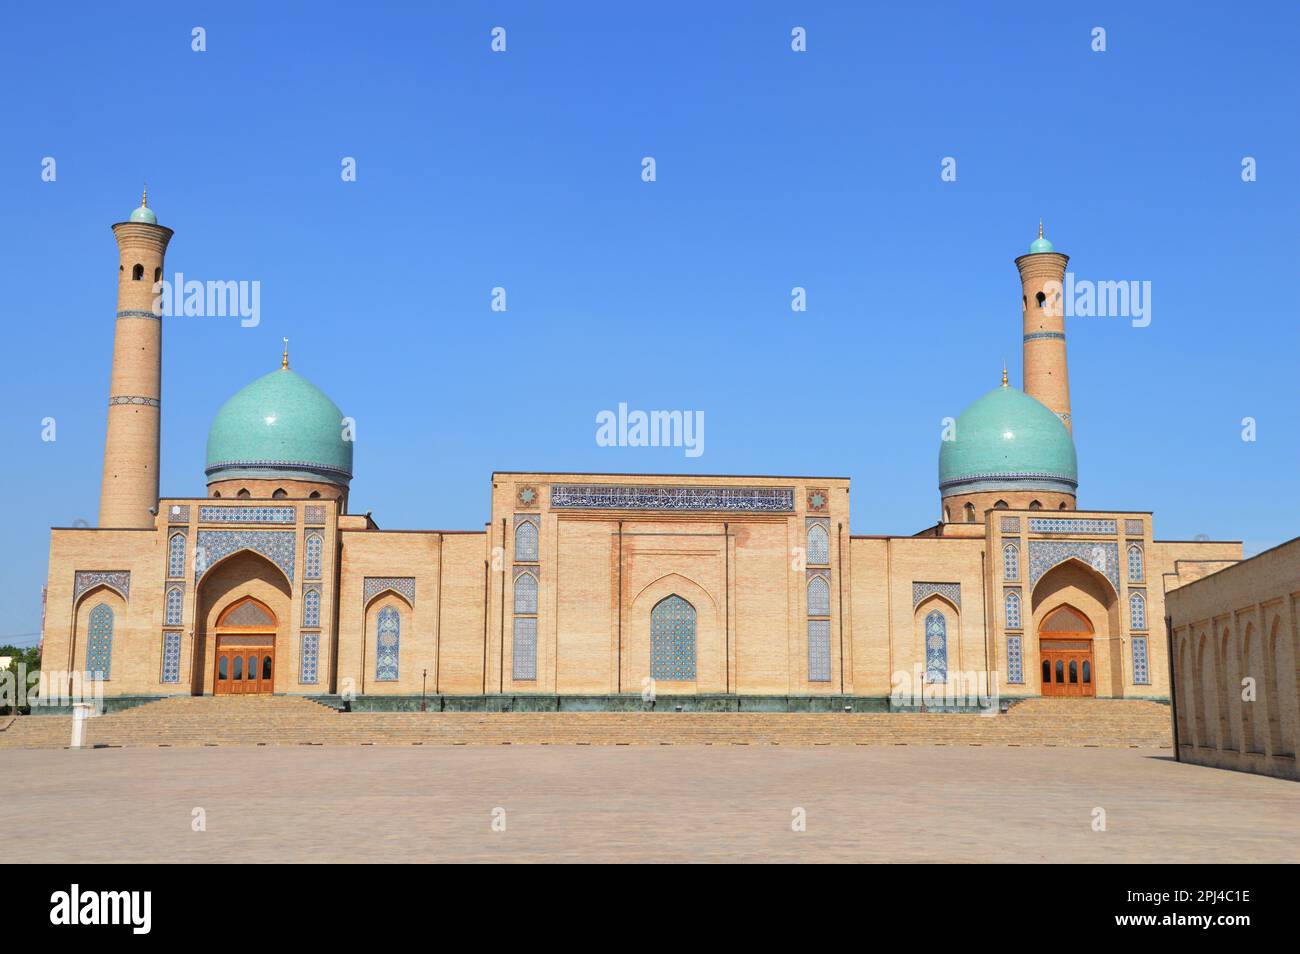 Ouzbékistan, Tachkent, capitale, complexe Khast-Imam: Mosquée Khazrati Imam, construite en 2007, de l'autre côté de la place Barak-Khan Madrasa. Banque D'Images